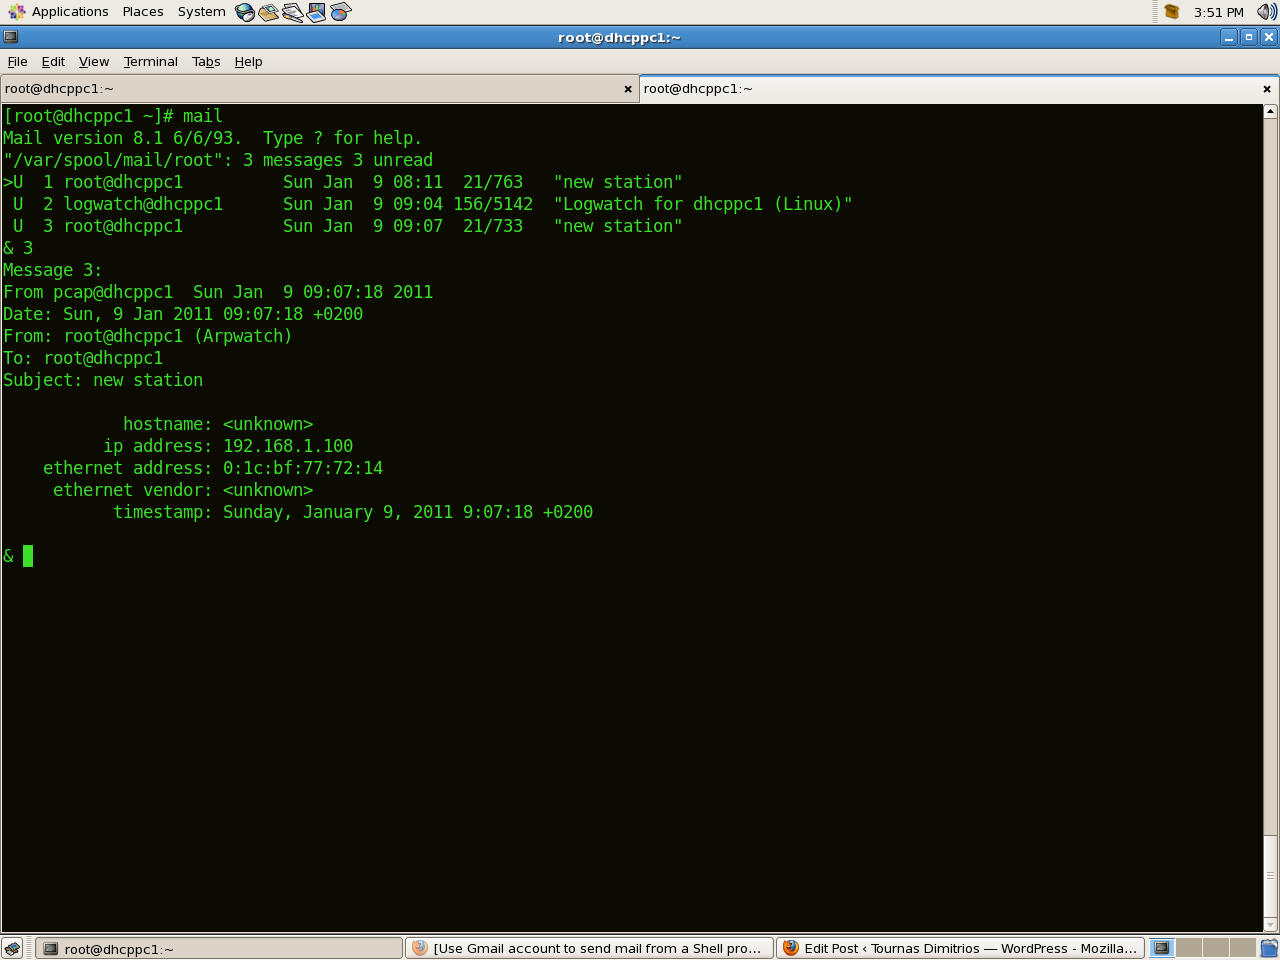 Root message. Linux ARP -A. Appwatchm для программирования. Программы на линукс для мониторинга. Разработчик линукс.